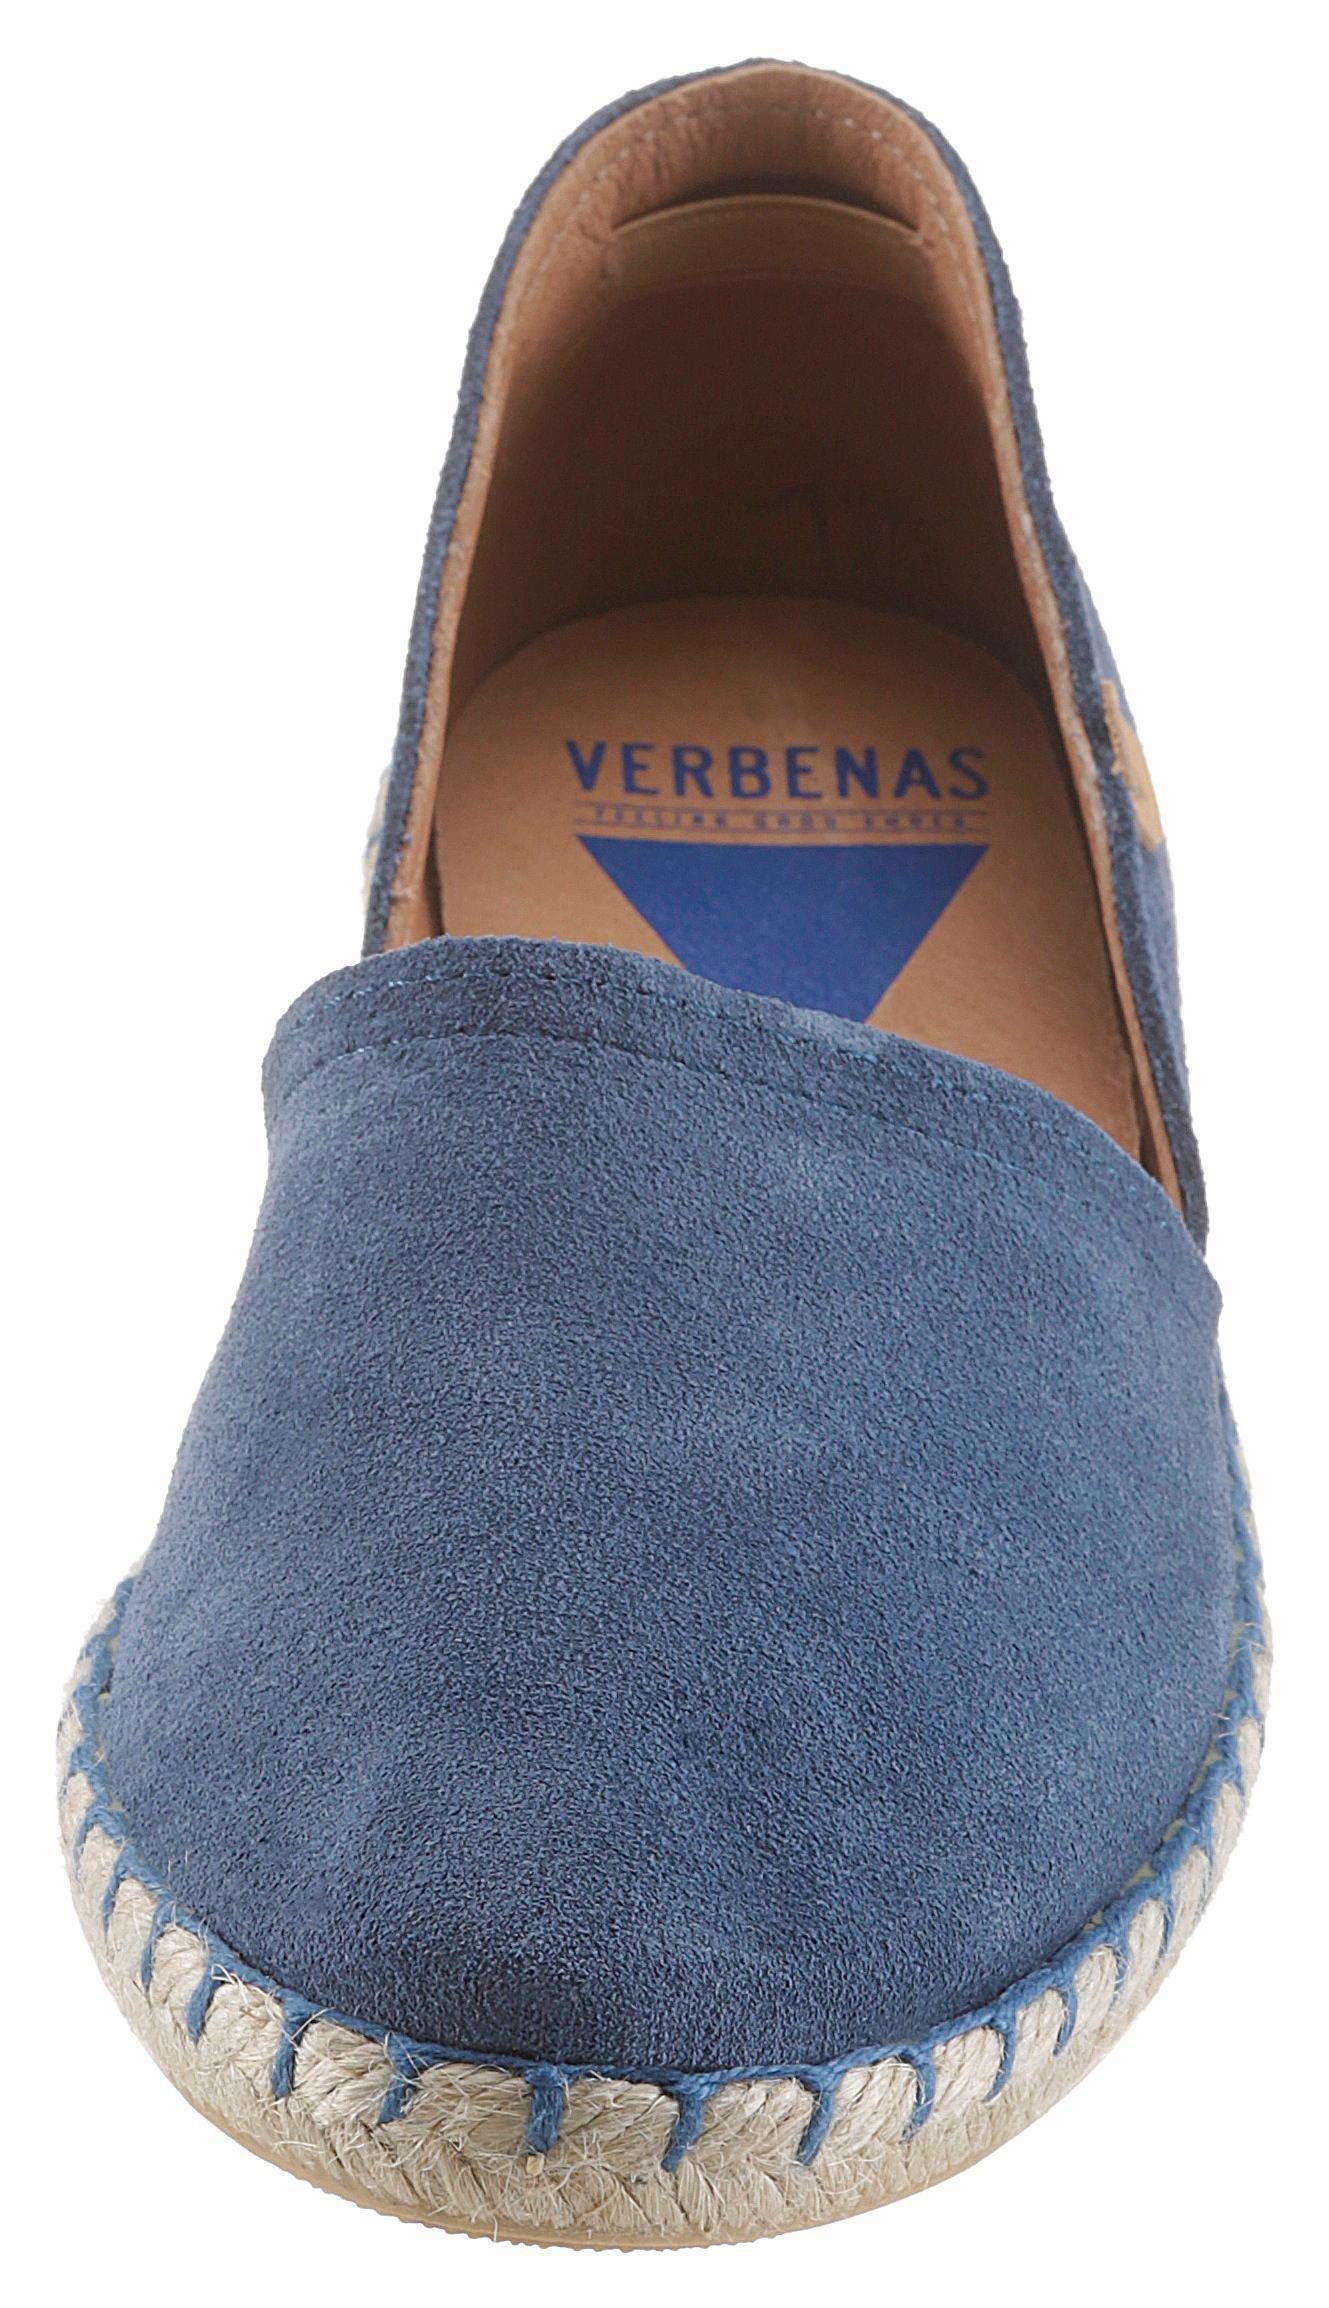 Jute-Rahmen Espadrille jeansblau VERBENAS mit typischem